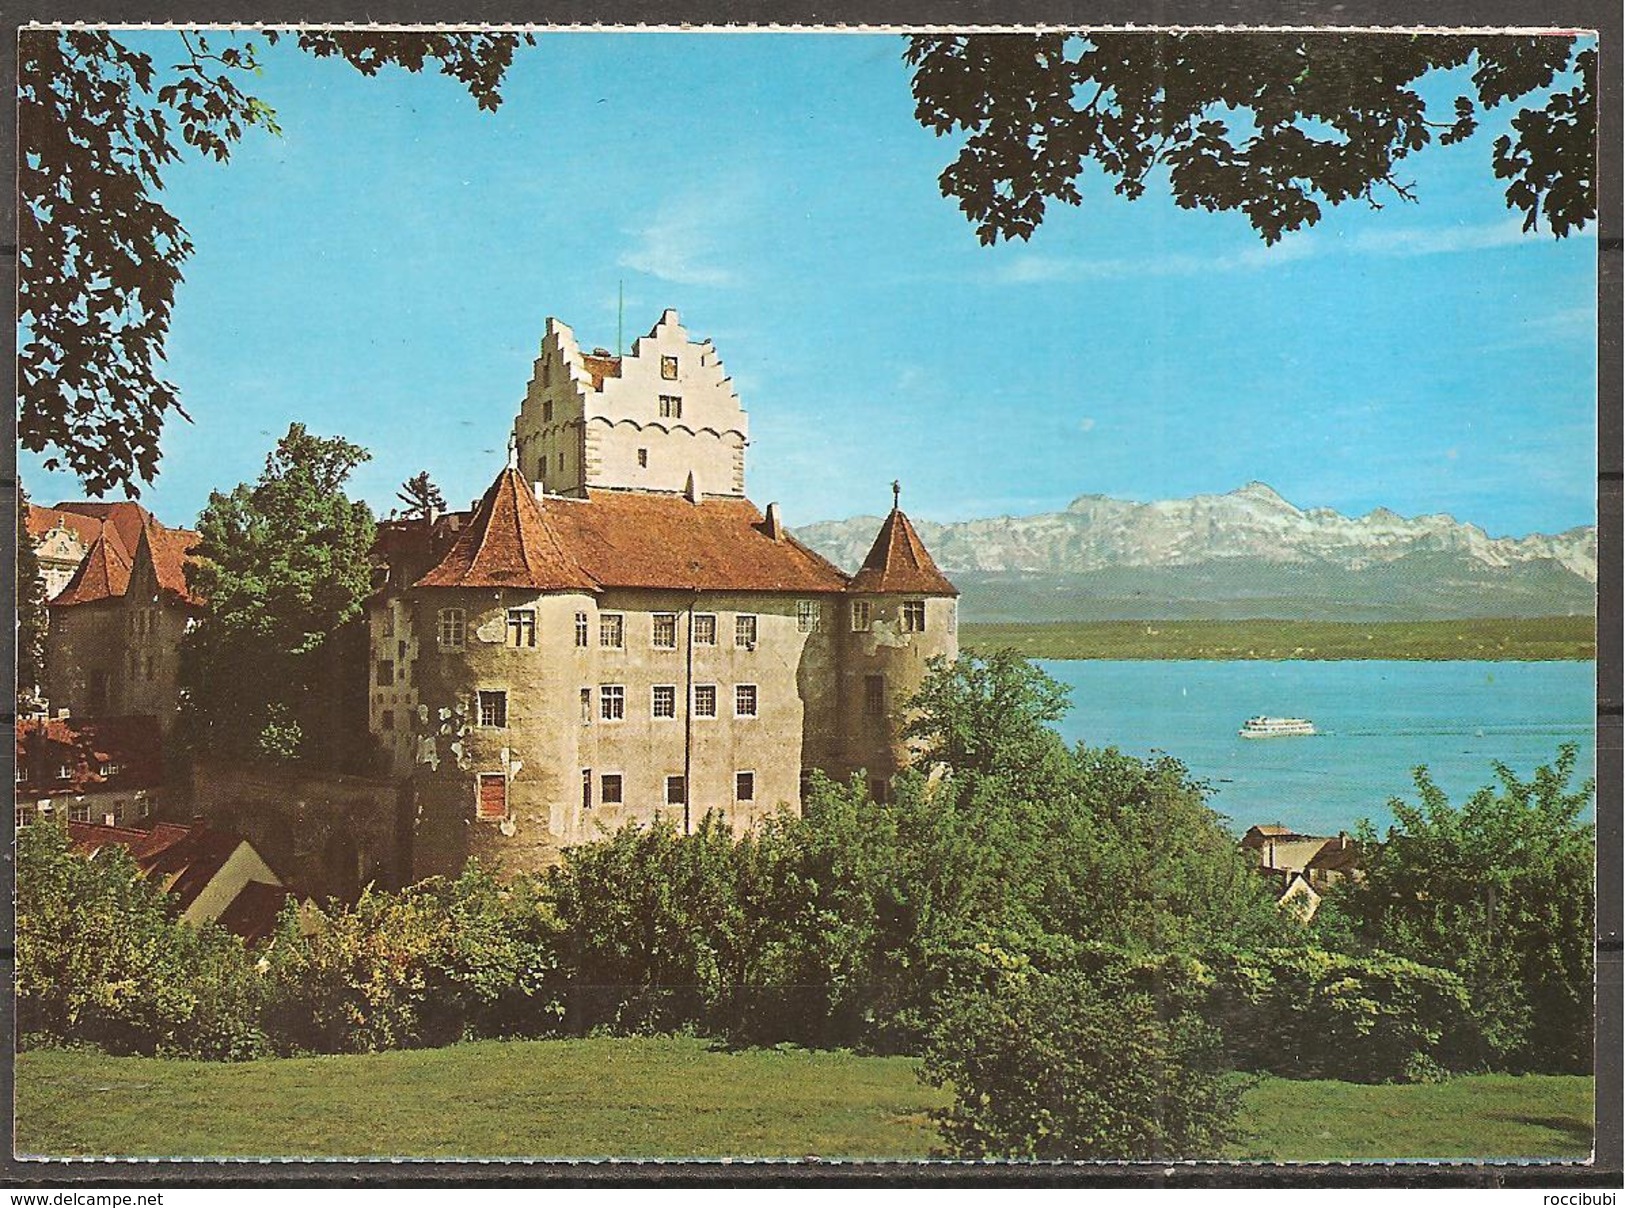 Meersburg, Altes Schloss Mit Dagobertsturm - Meersburg